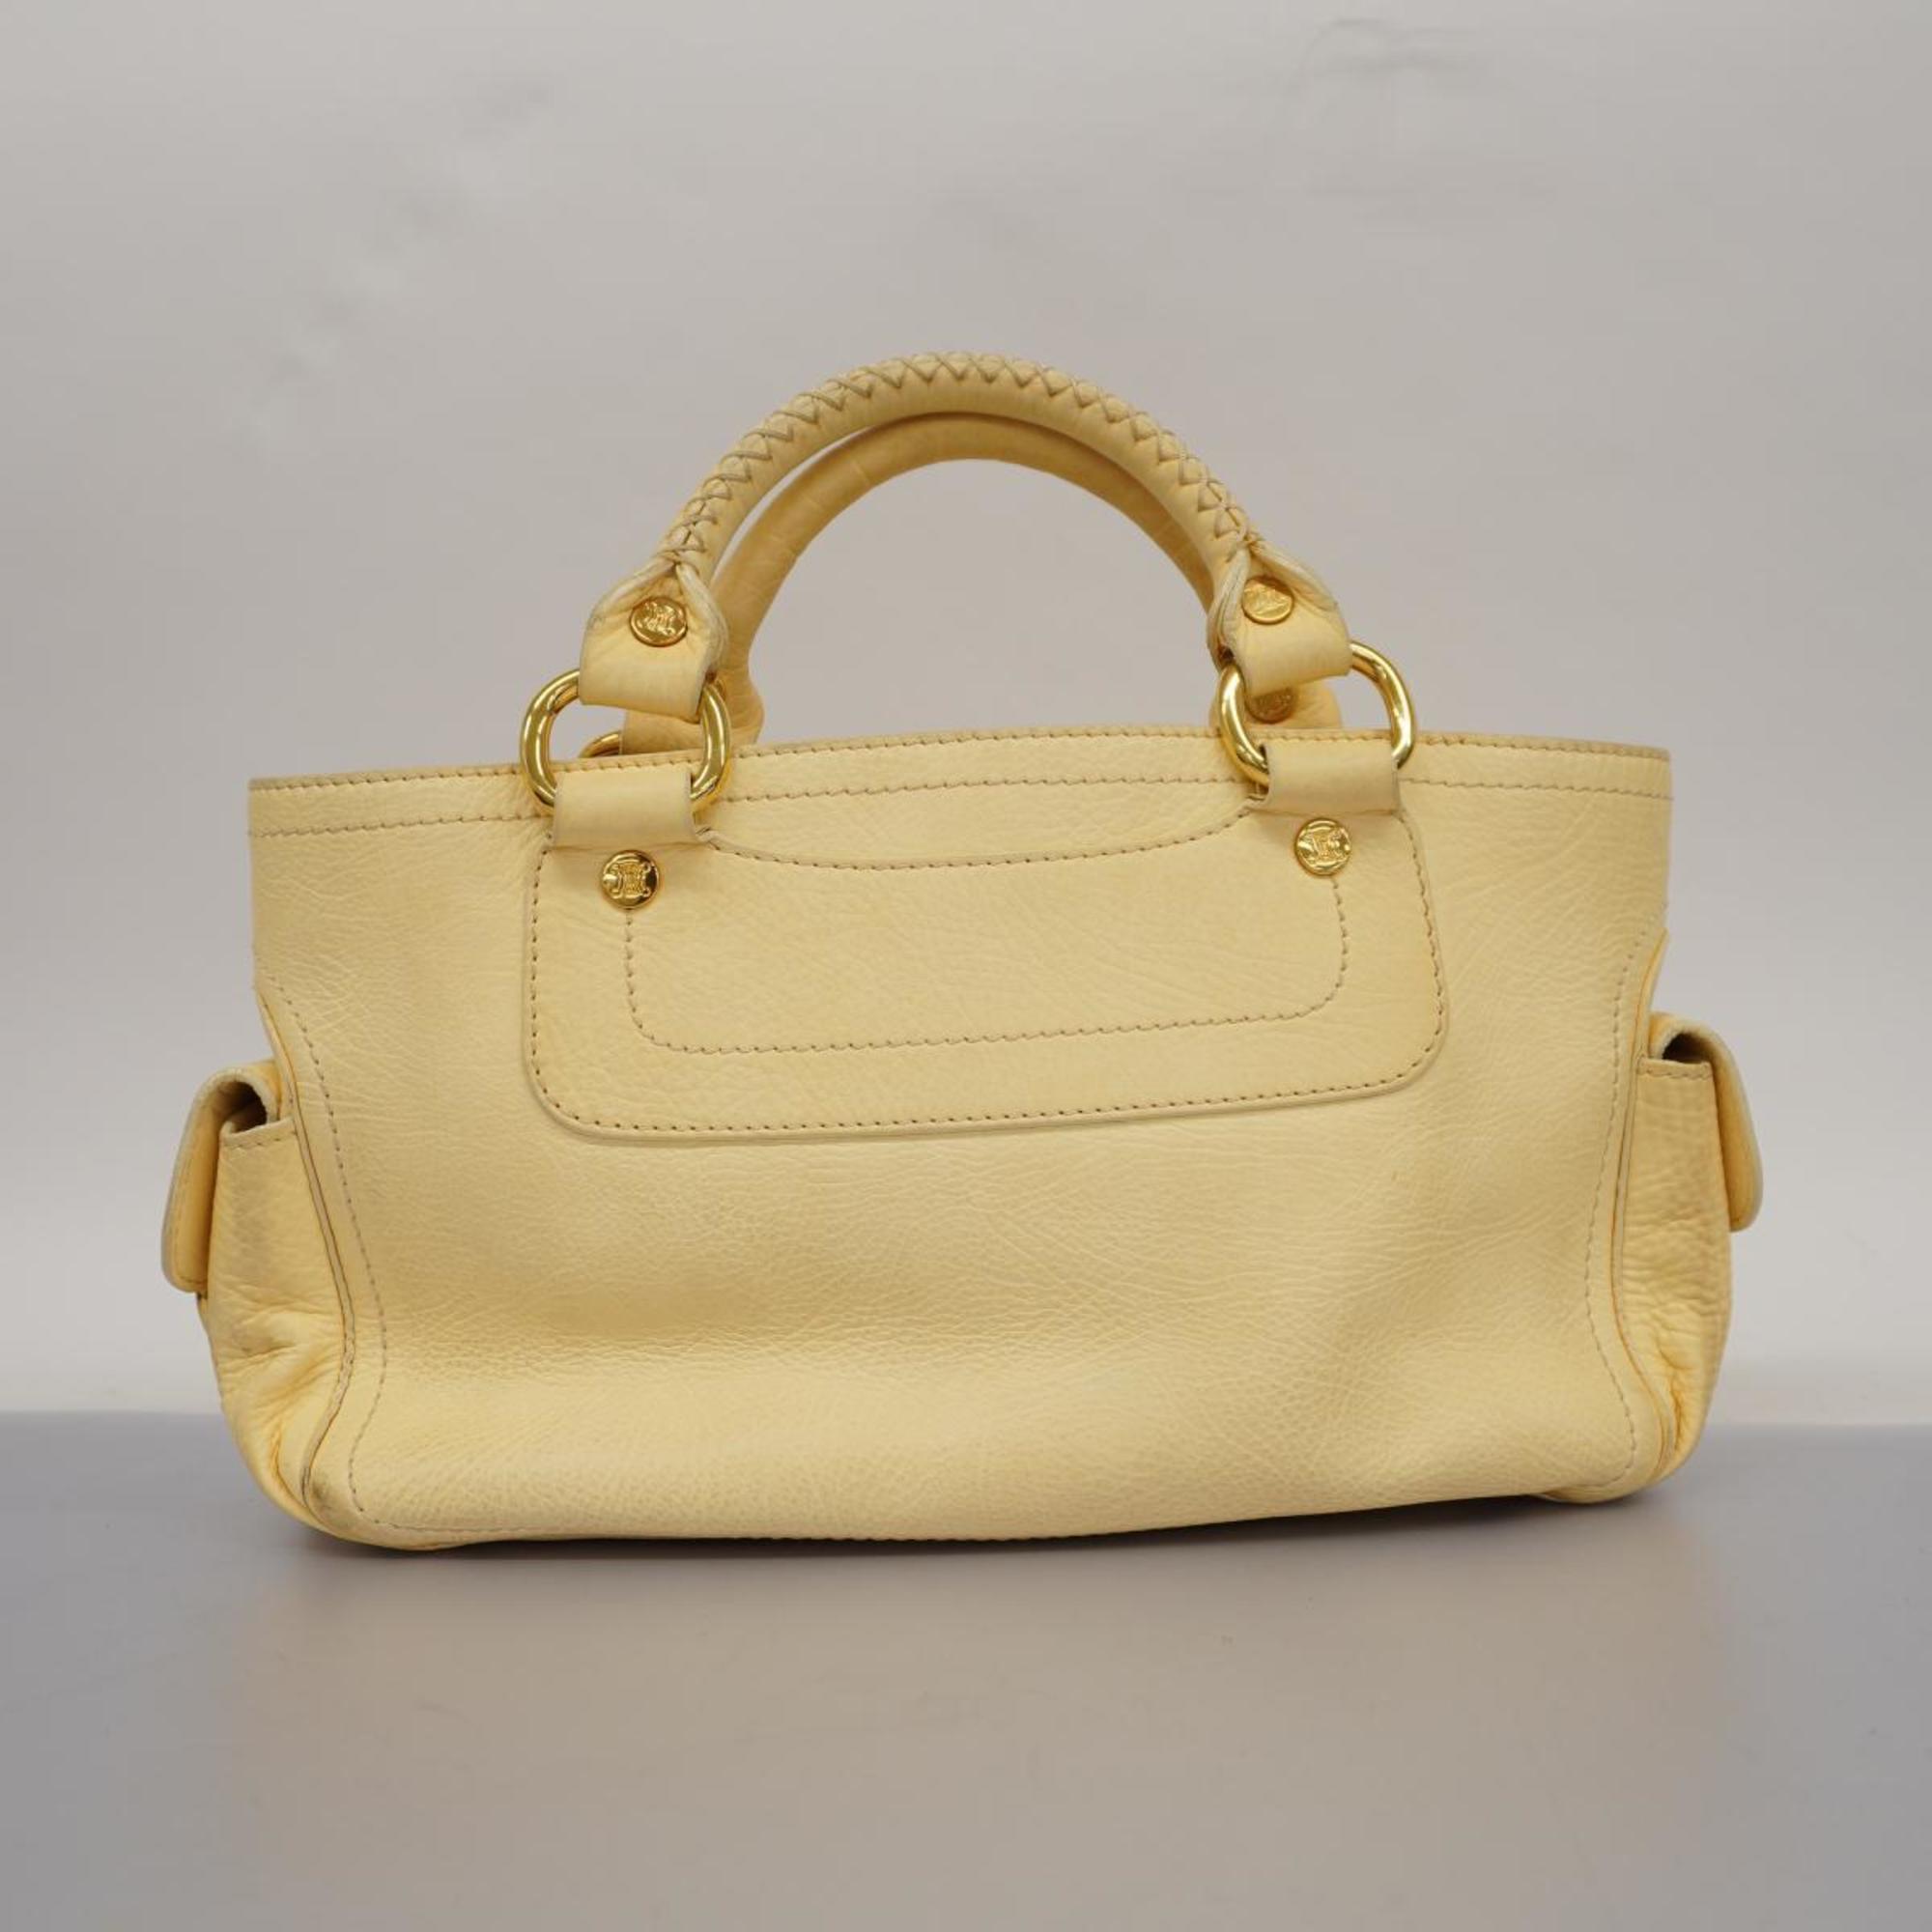 Celine handbag boogie leather cream yellow ladies